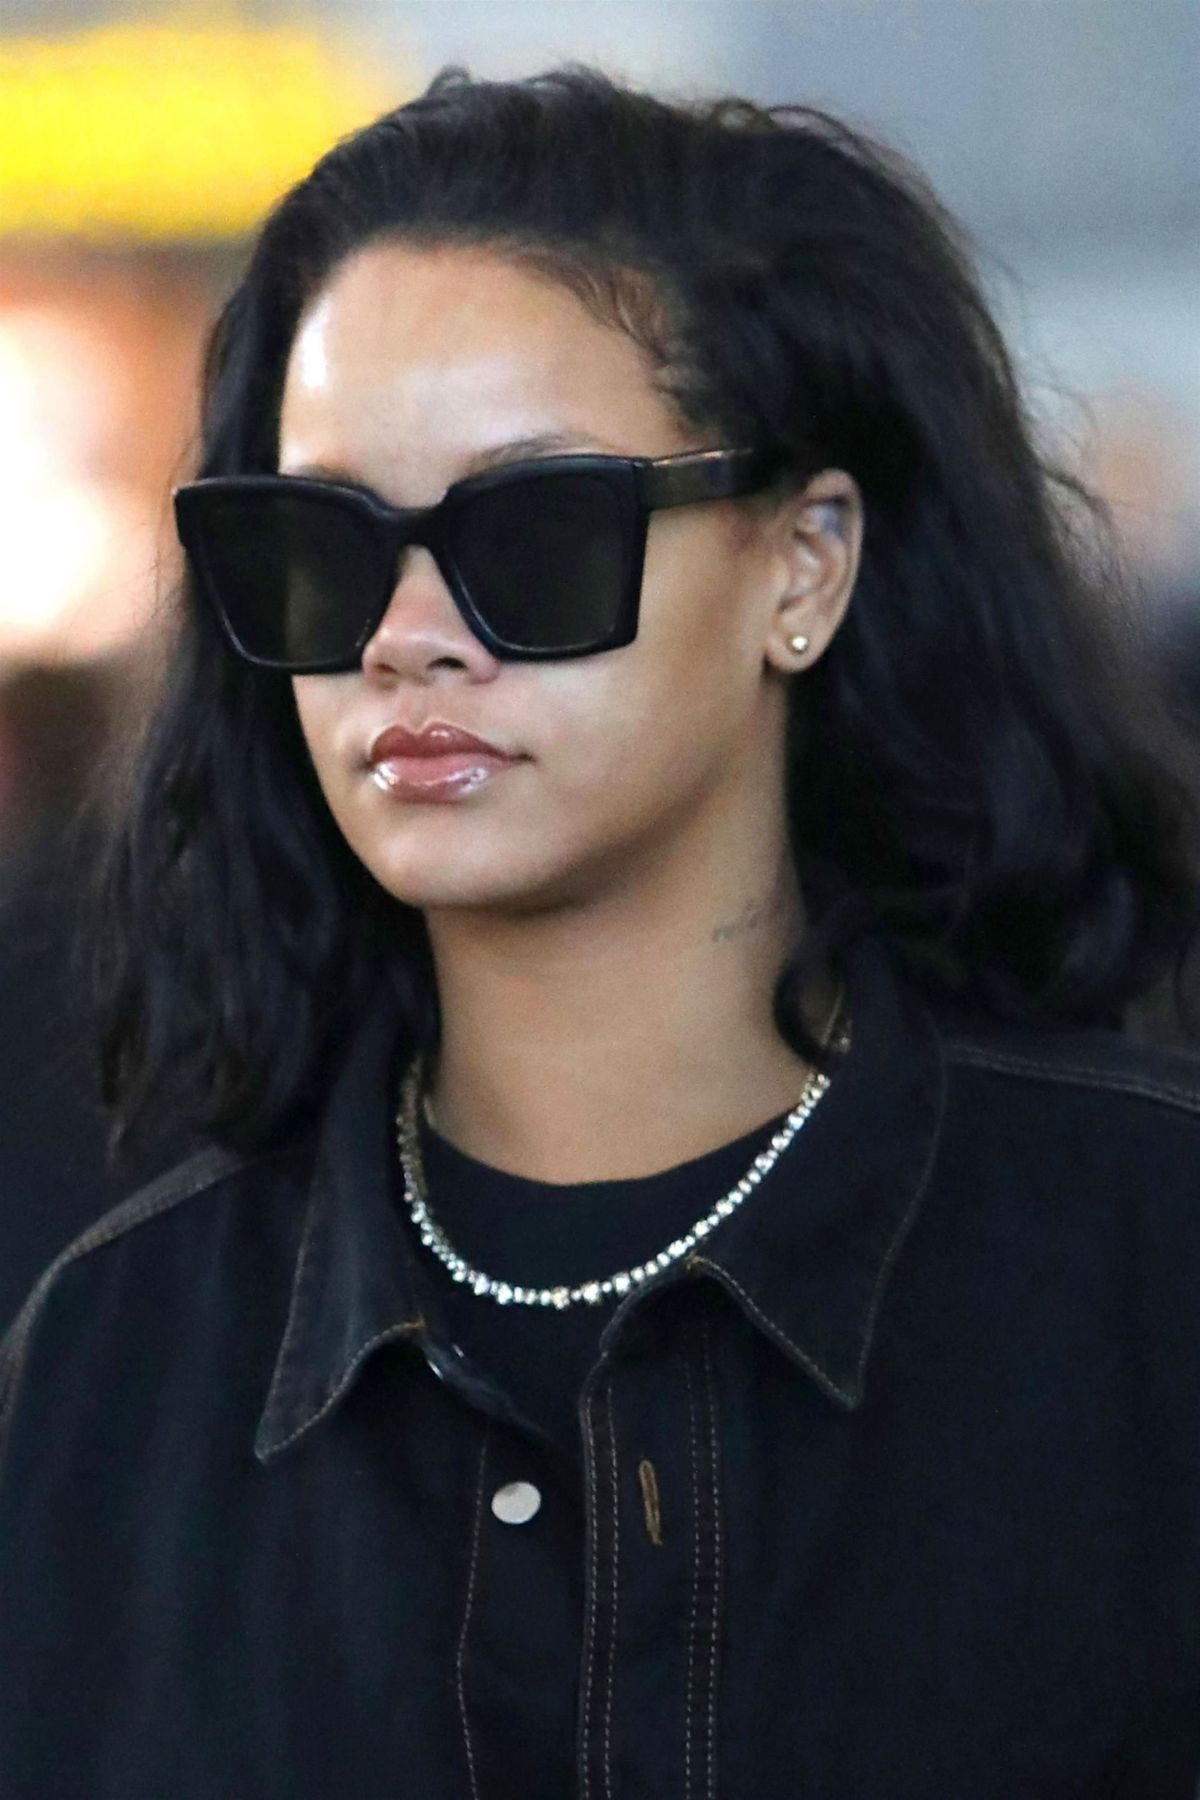 Rihanna at JFK Airport November 18, 2008 – Star Style